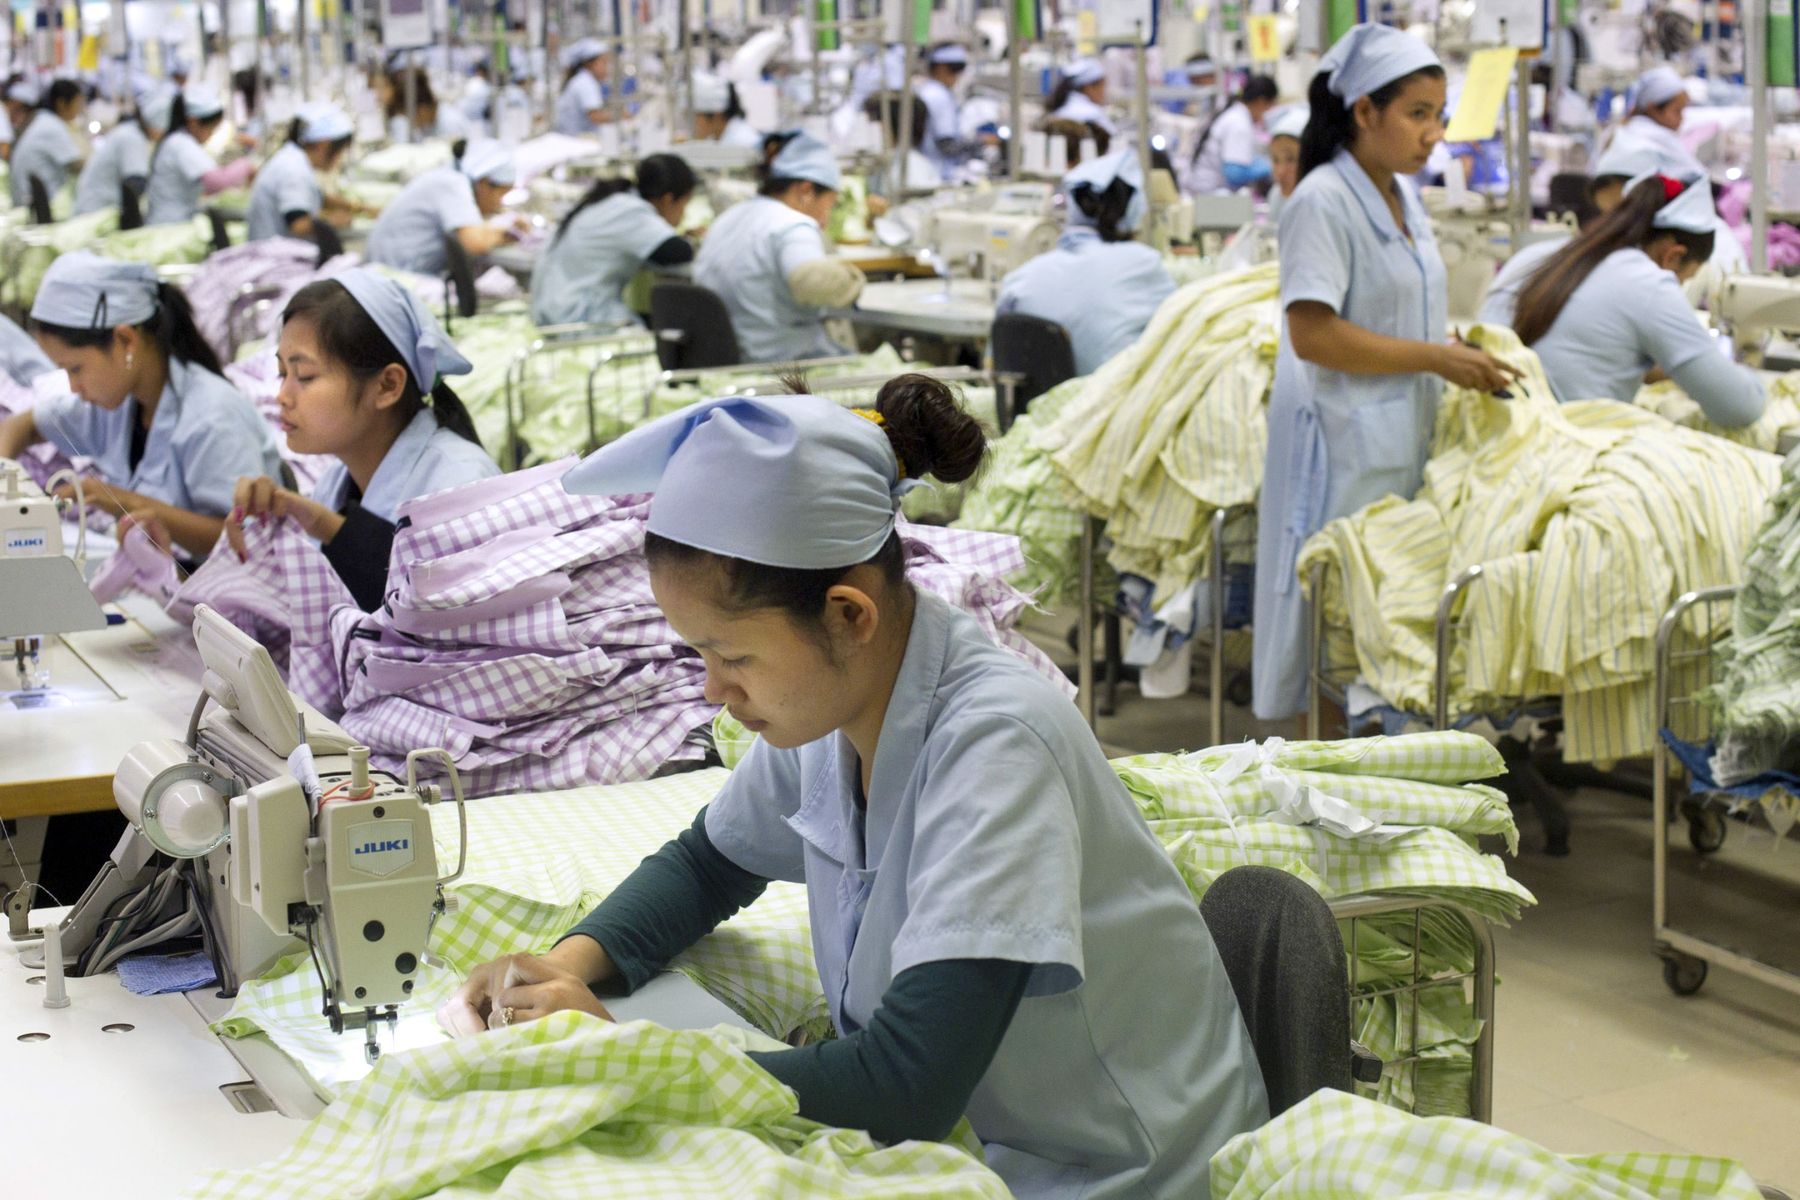 สงครามการค้า 'จีน-สหรัฐ' ส่งผลให้แบรนด์เสื้อผ้าชั้นนำเตรียมย้ายฐานการผลิตไปกัมพูชา